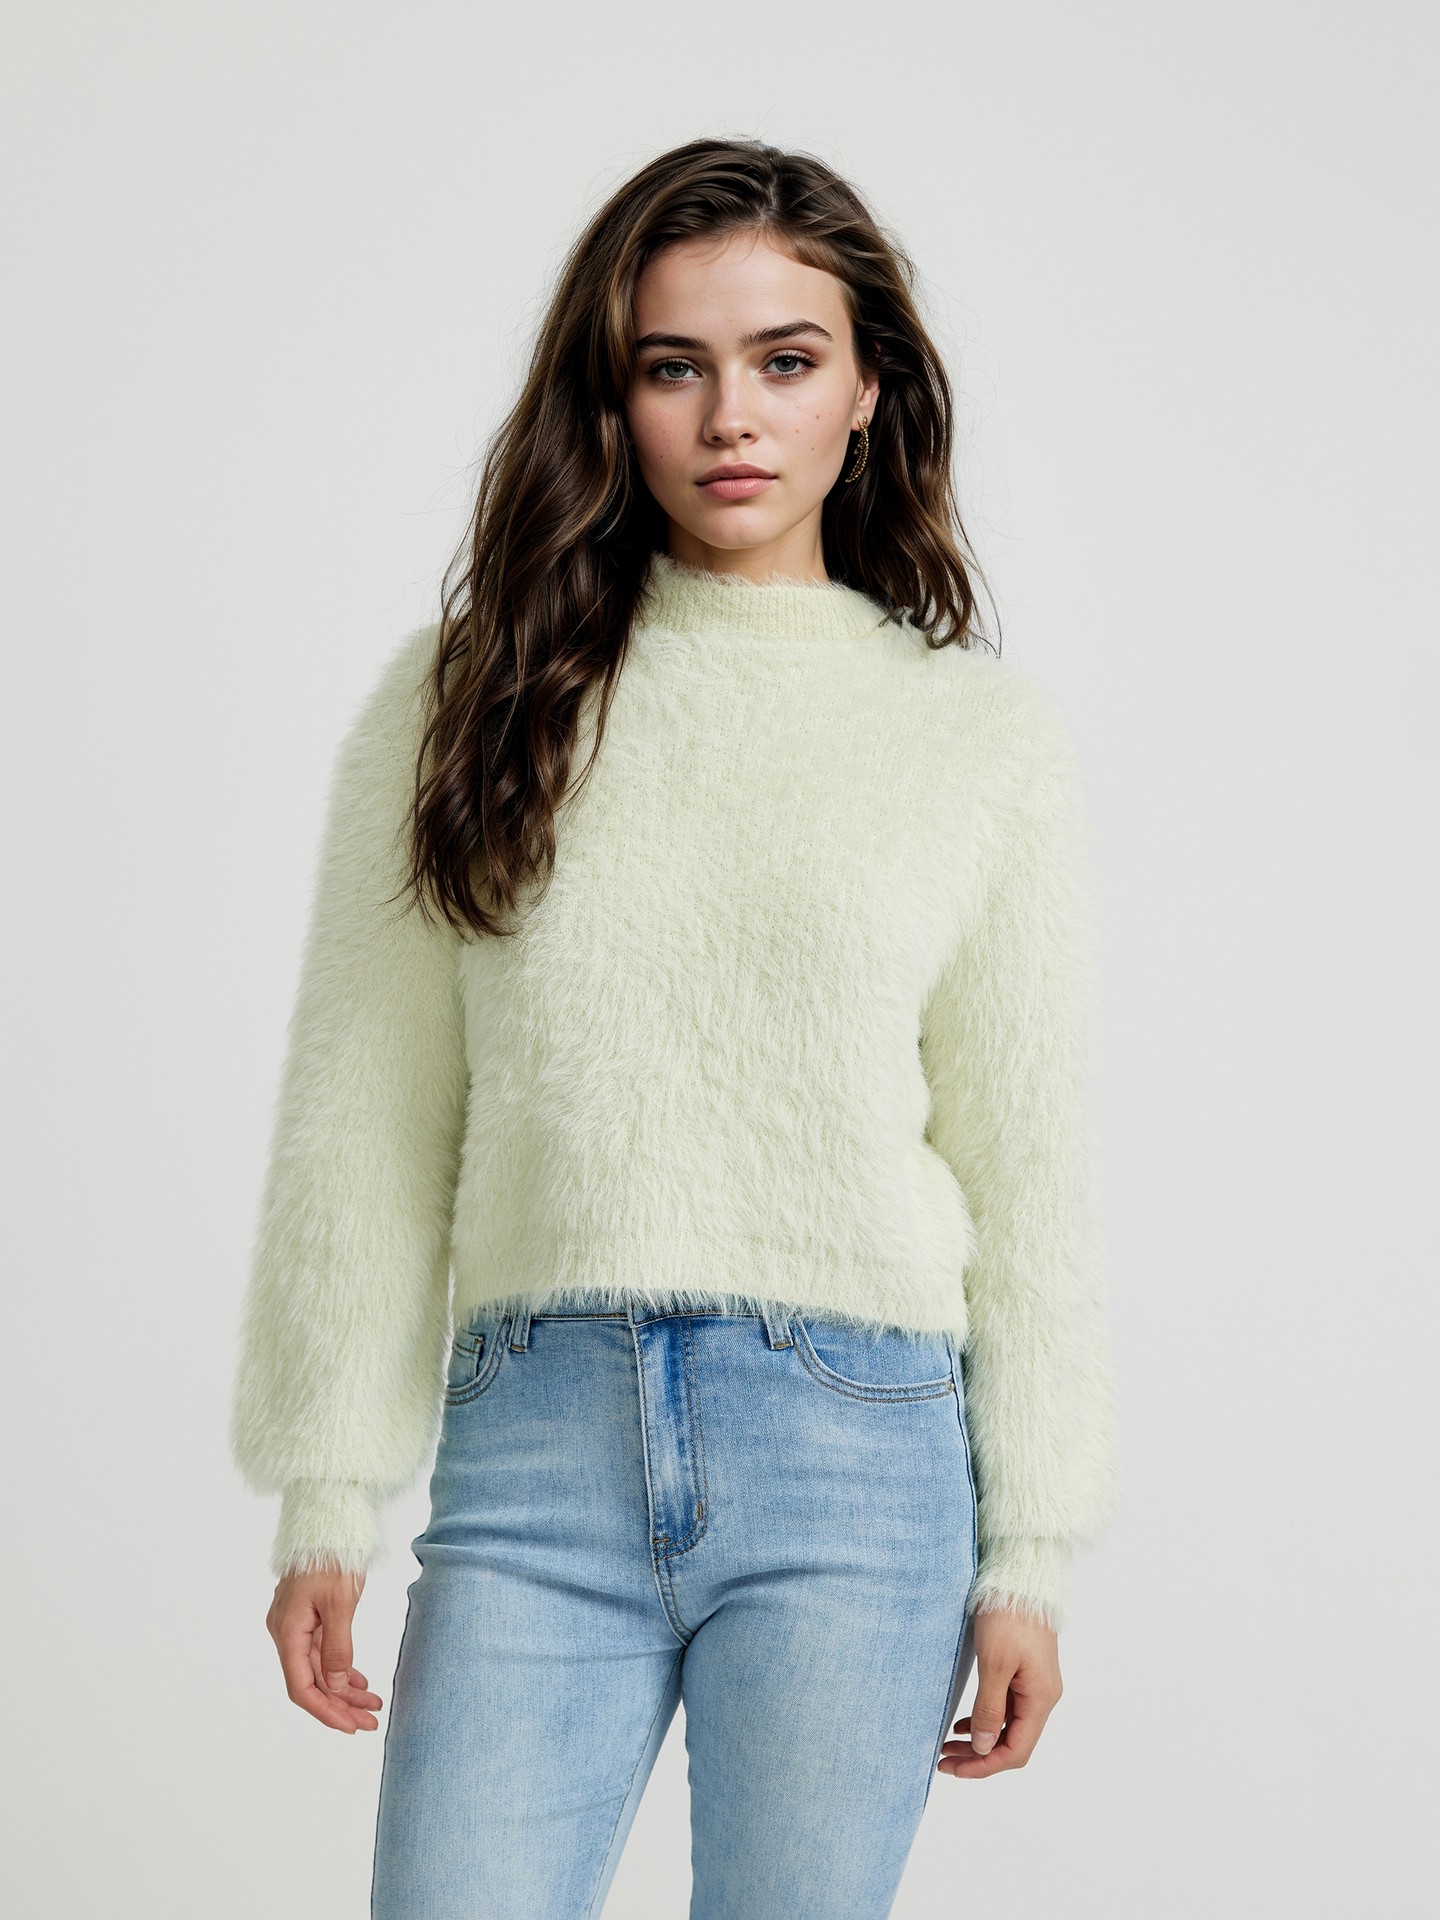 Feather Knit Pullover丨Urbanic